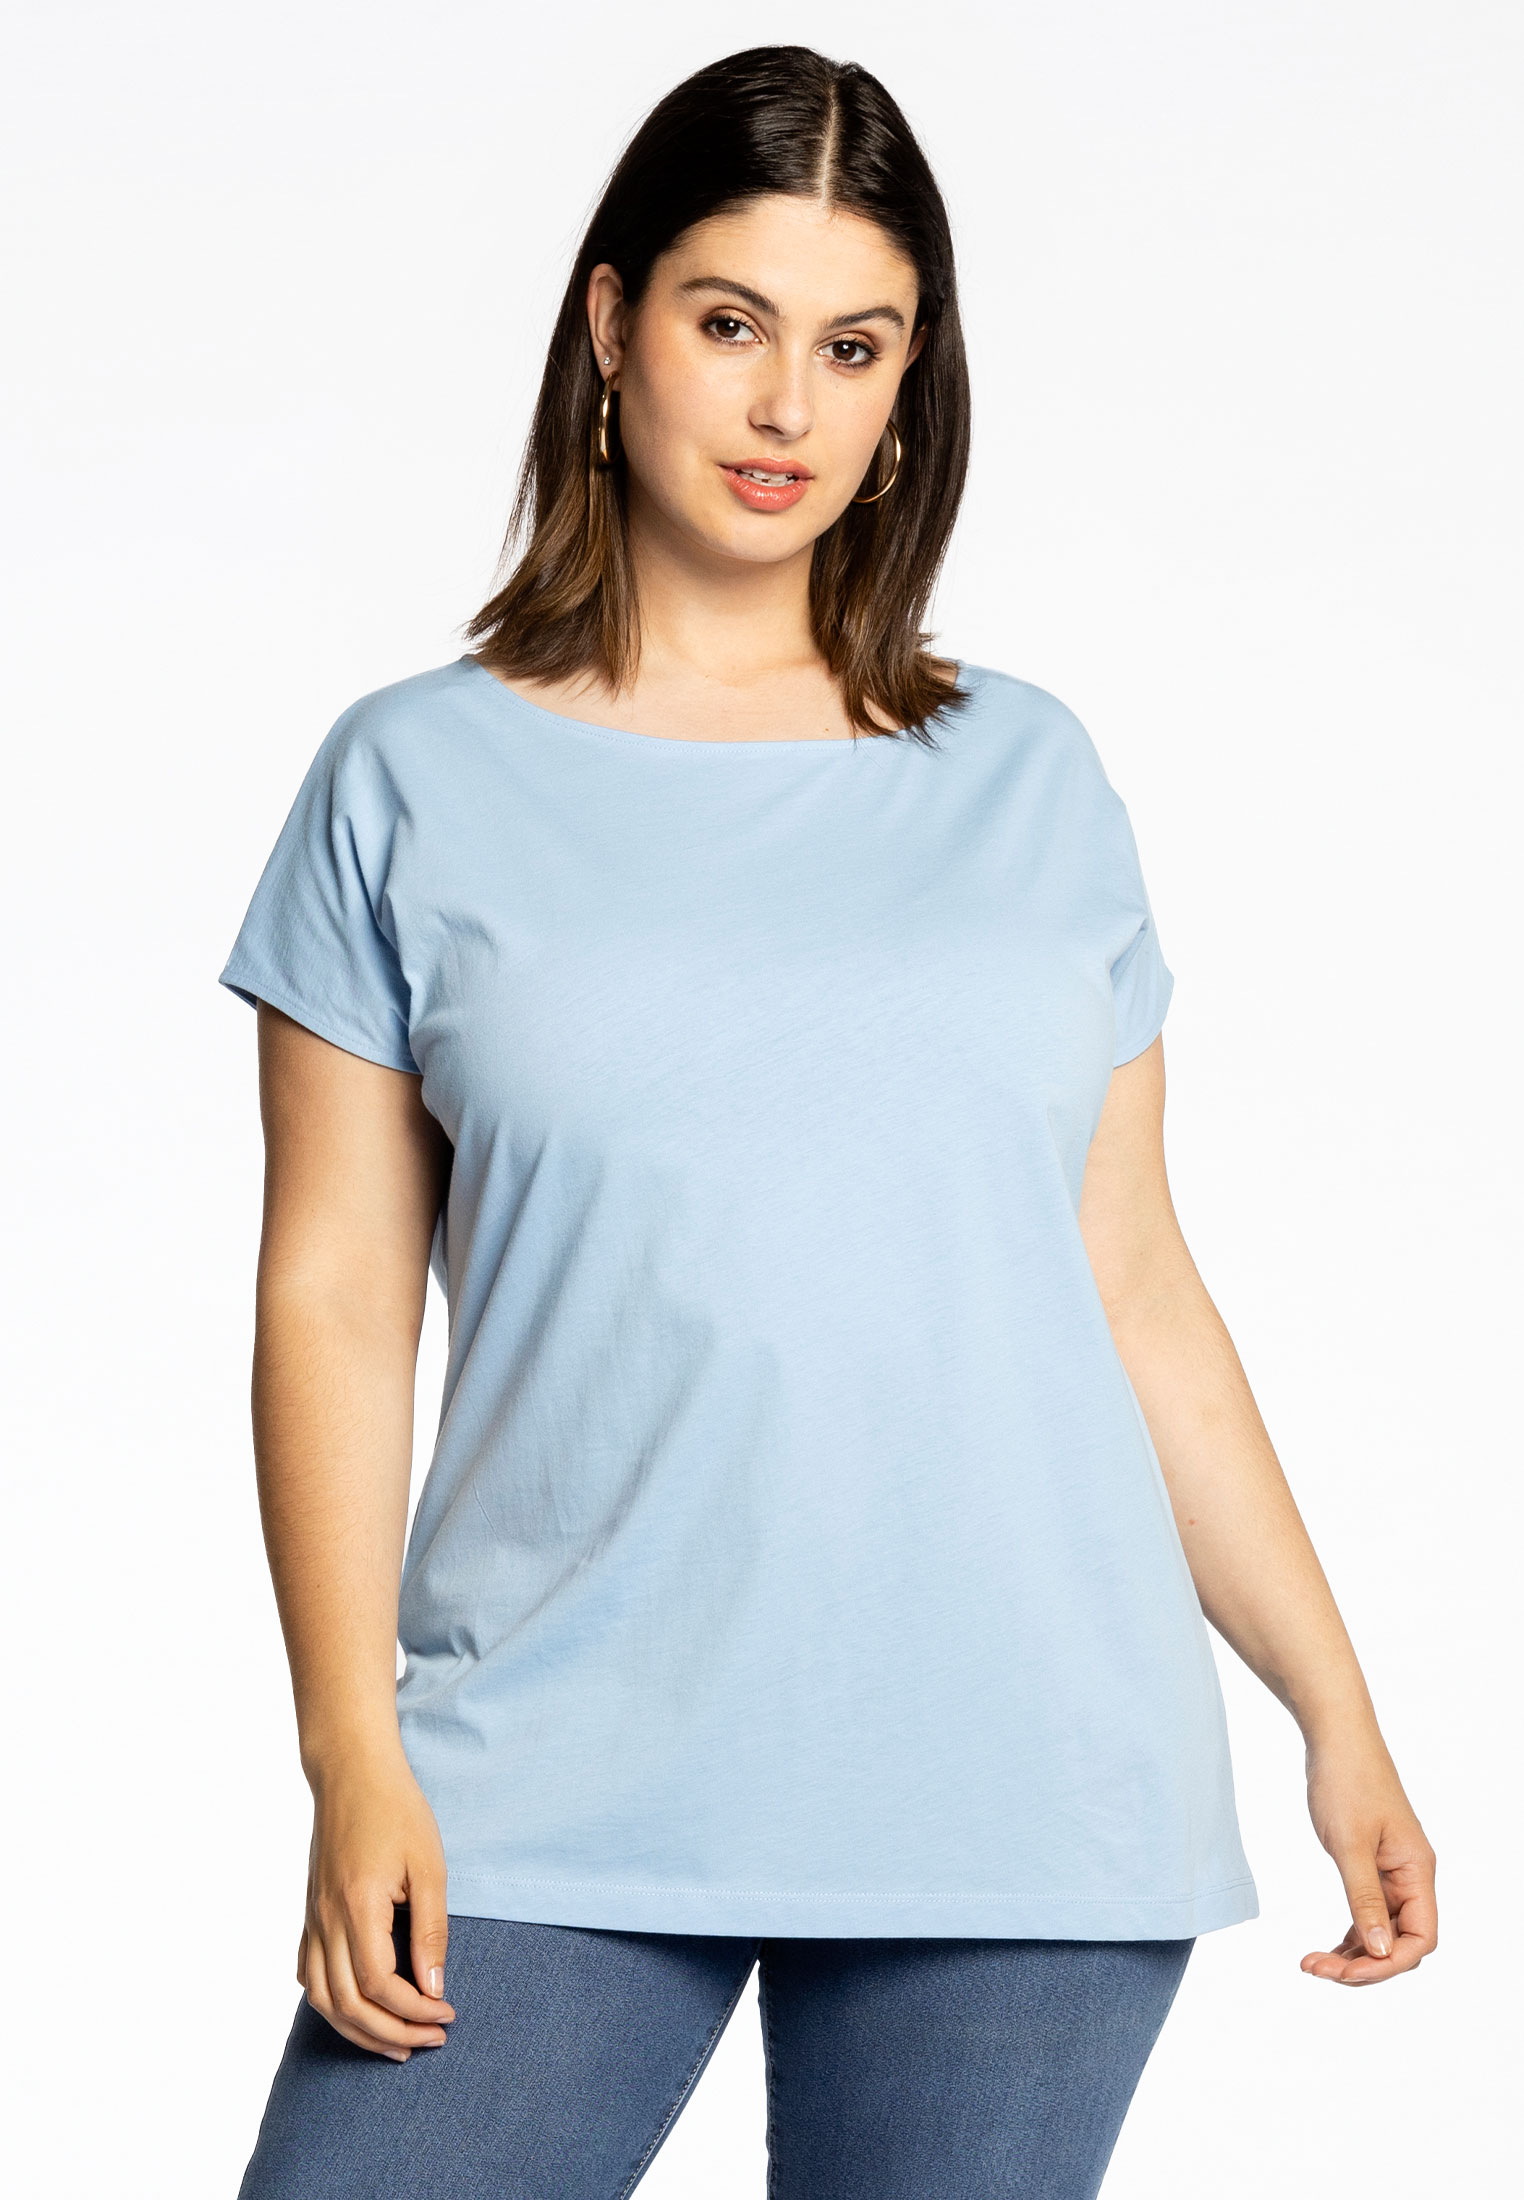 Basic T-shirt kapmouwen COTTON 38/40 light blue